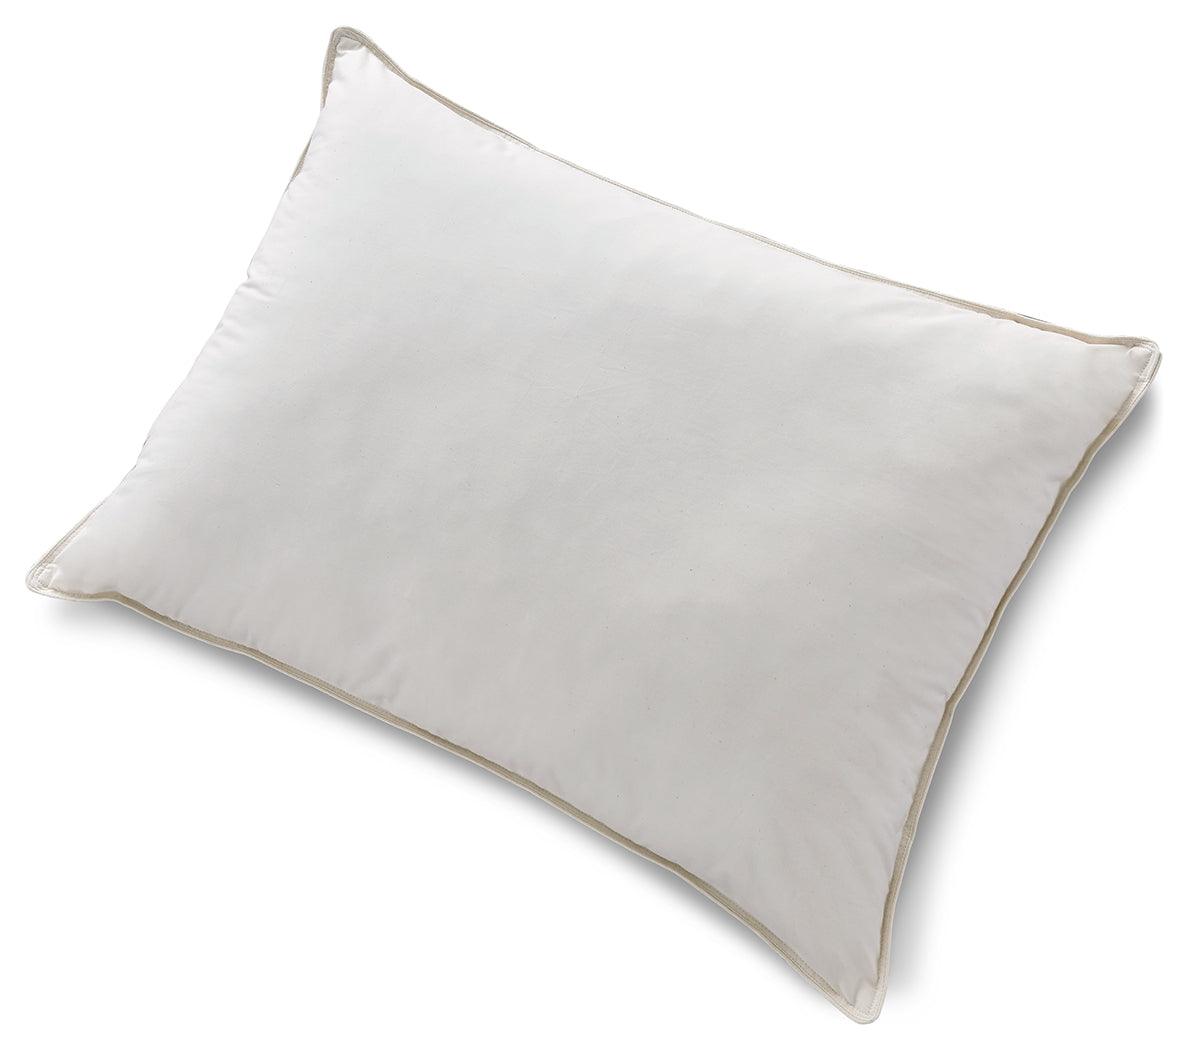 Z123 Pillow Series White Cotton Allergy Pillow - Ella Furniture